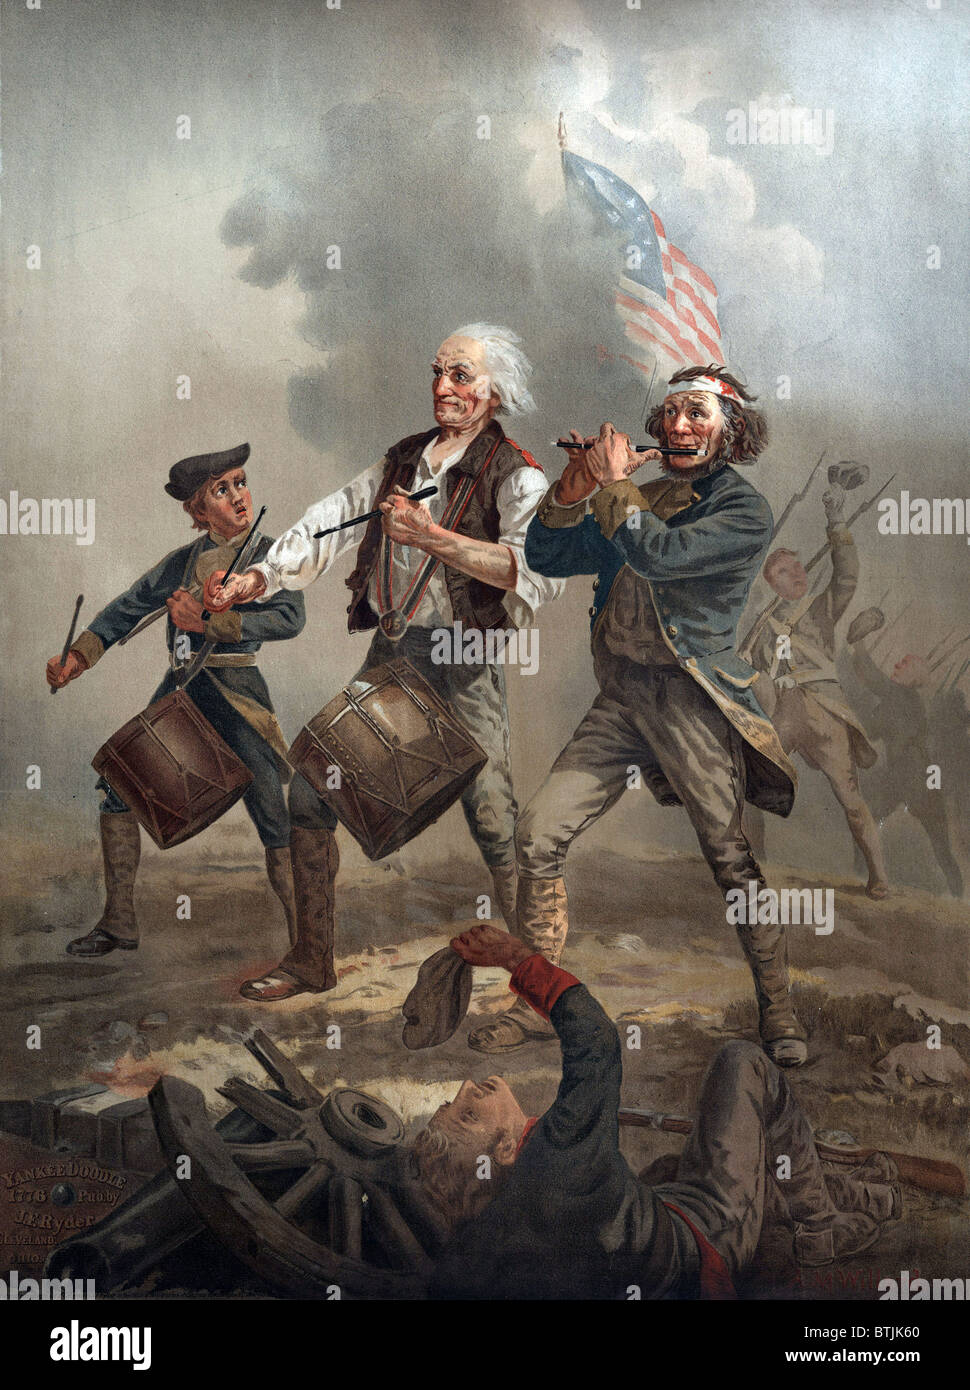 Die amerikanische Revolution, Yankee Doodle 1776, drei Patrioten, zwei spielen Trommeln und spielen eine führende Truppen in die Schlacht von Archibald M. Willard, circa 1876 Fife. Stockfoto